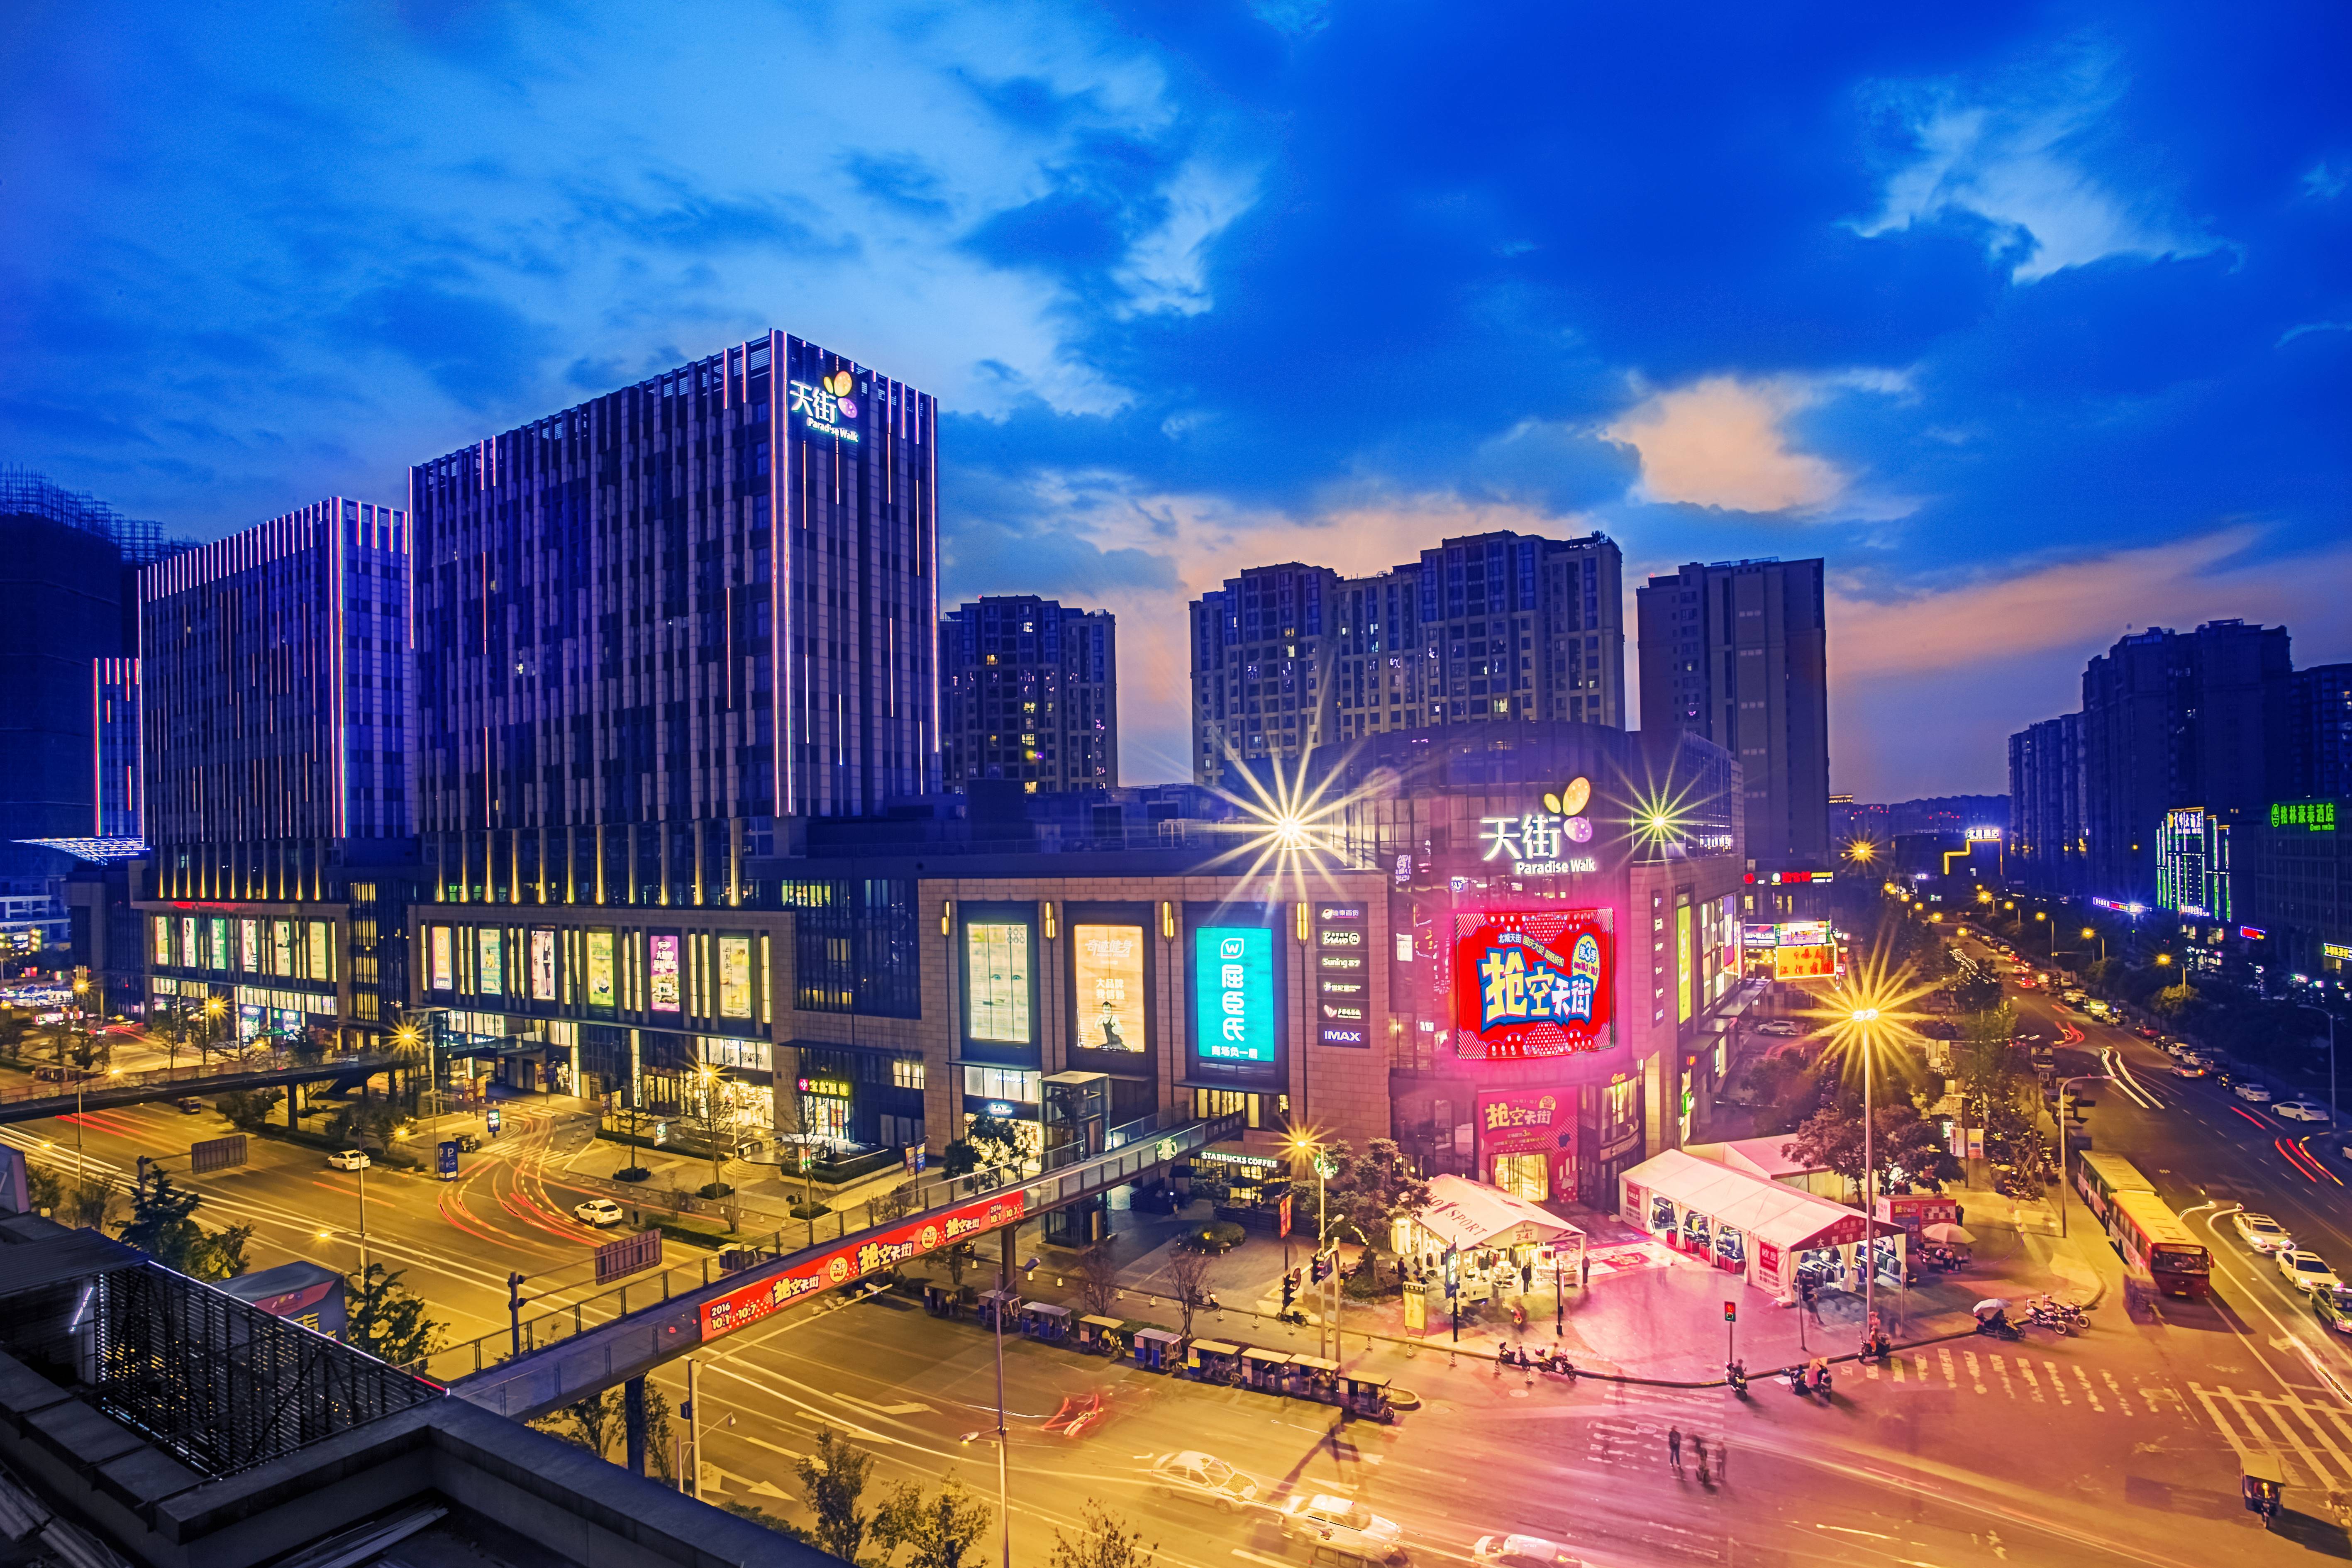 4万平米购物中心龙湖成都三千集天街对比关注2013/4万平米配套零售